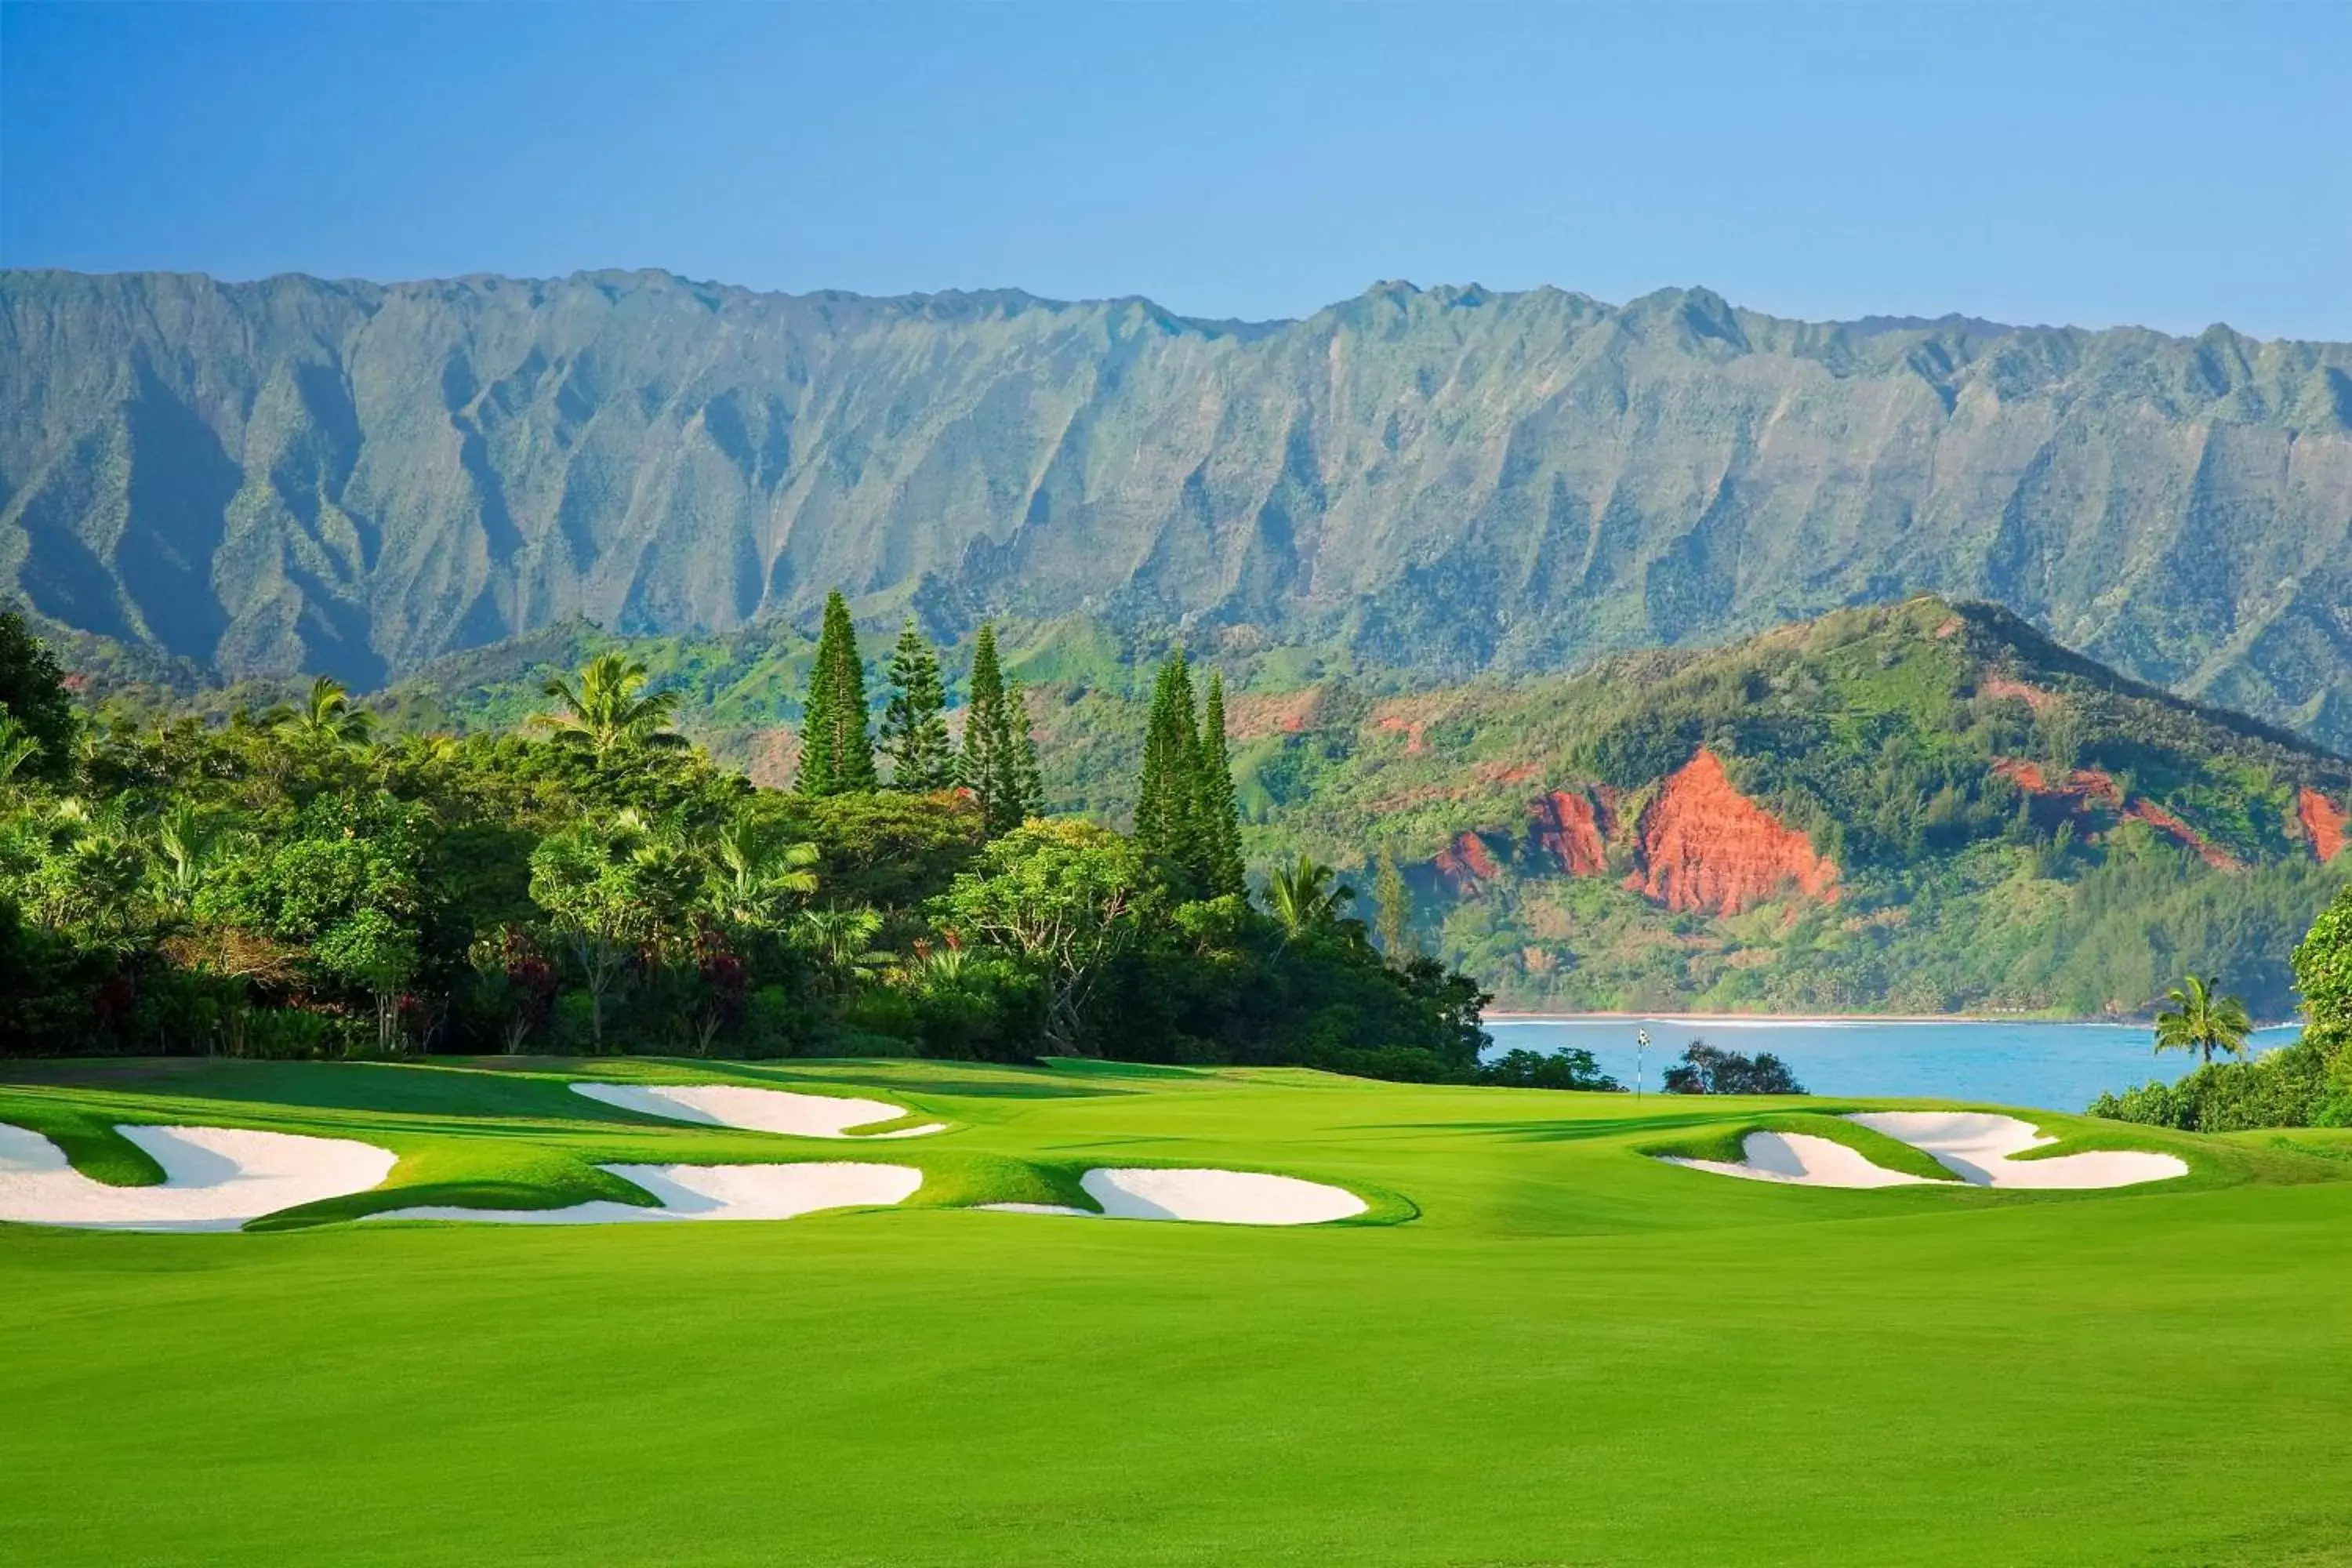 On site, Golf in 1 Hotel Hanalei Bay